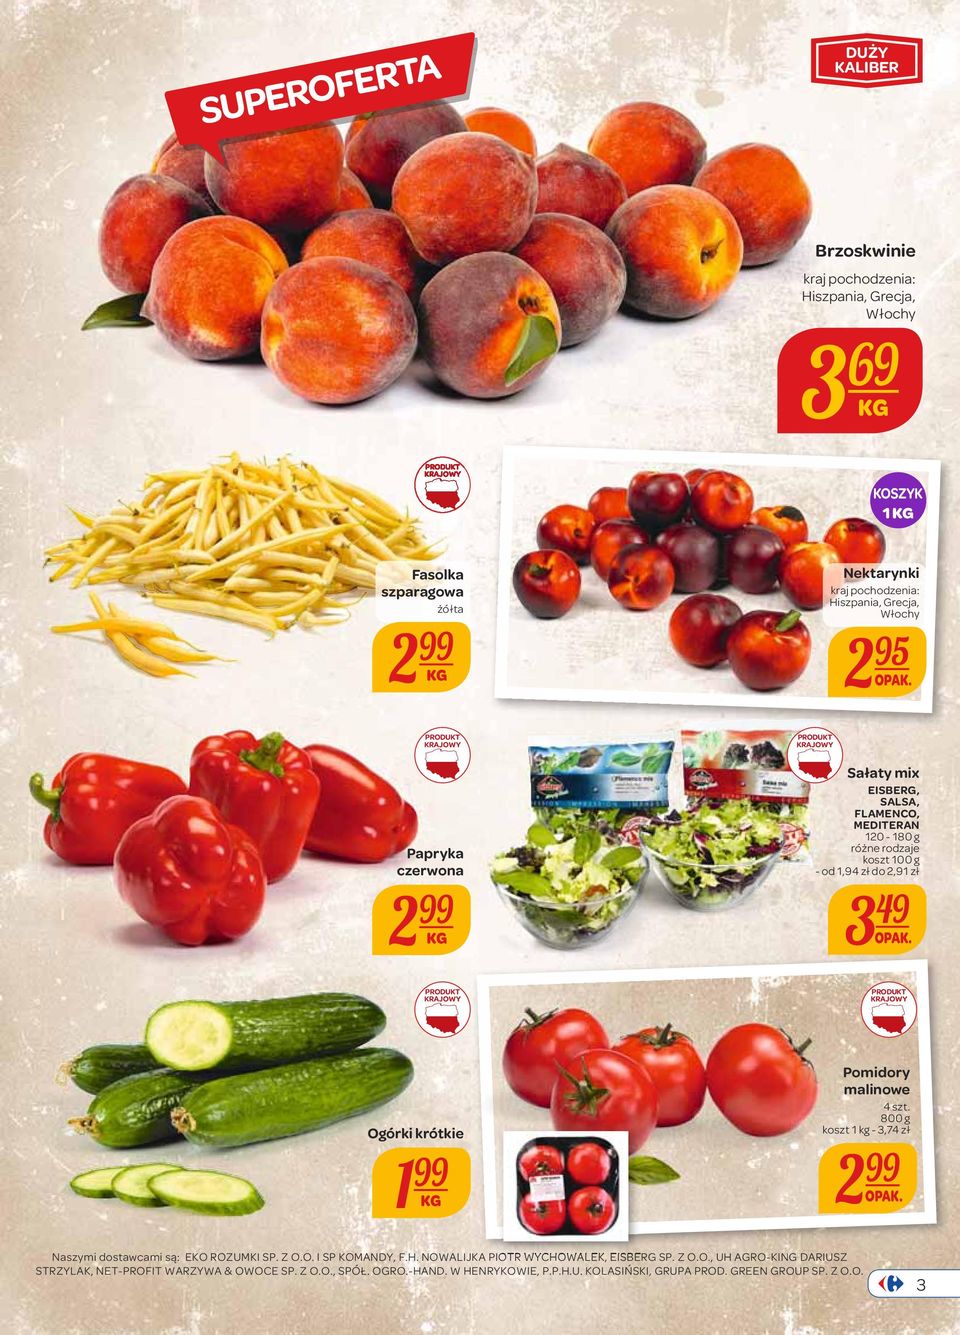 Ogórki krótkie 1 99 Pomidory malinowe 4 szt. 800 g koszt 1 kg - 3,74 zł 2 99 OPAK. Naszymi dostawcami są: EKO ROZUMKI SP. Z O.O. I SP KOMANDY, F.H.